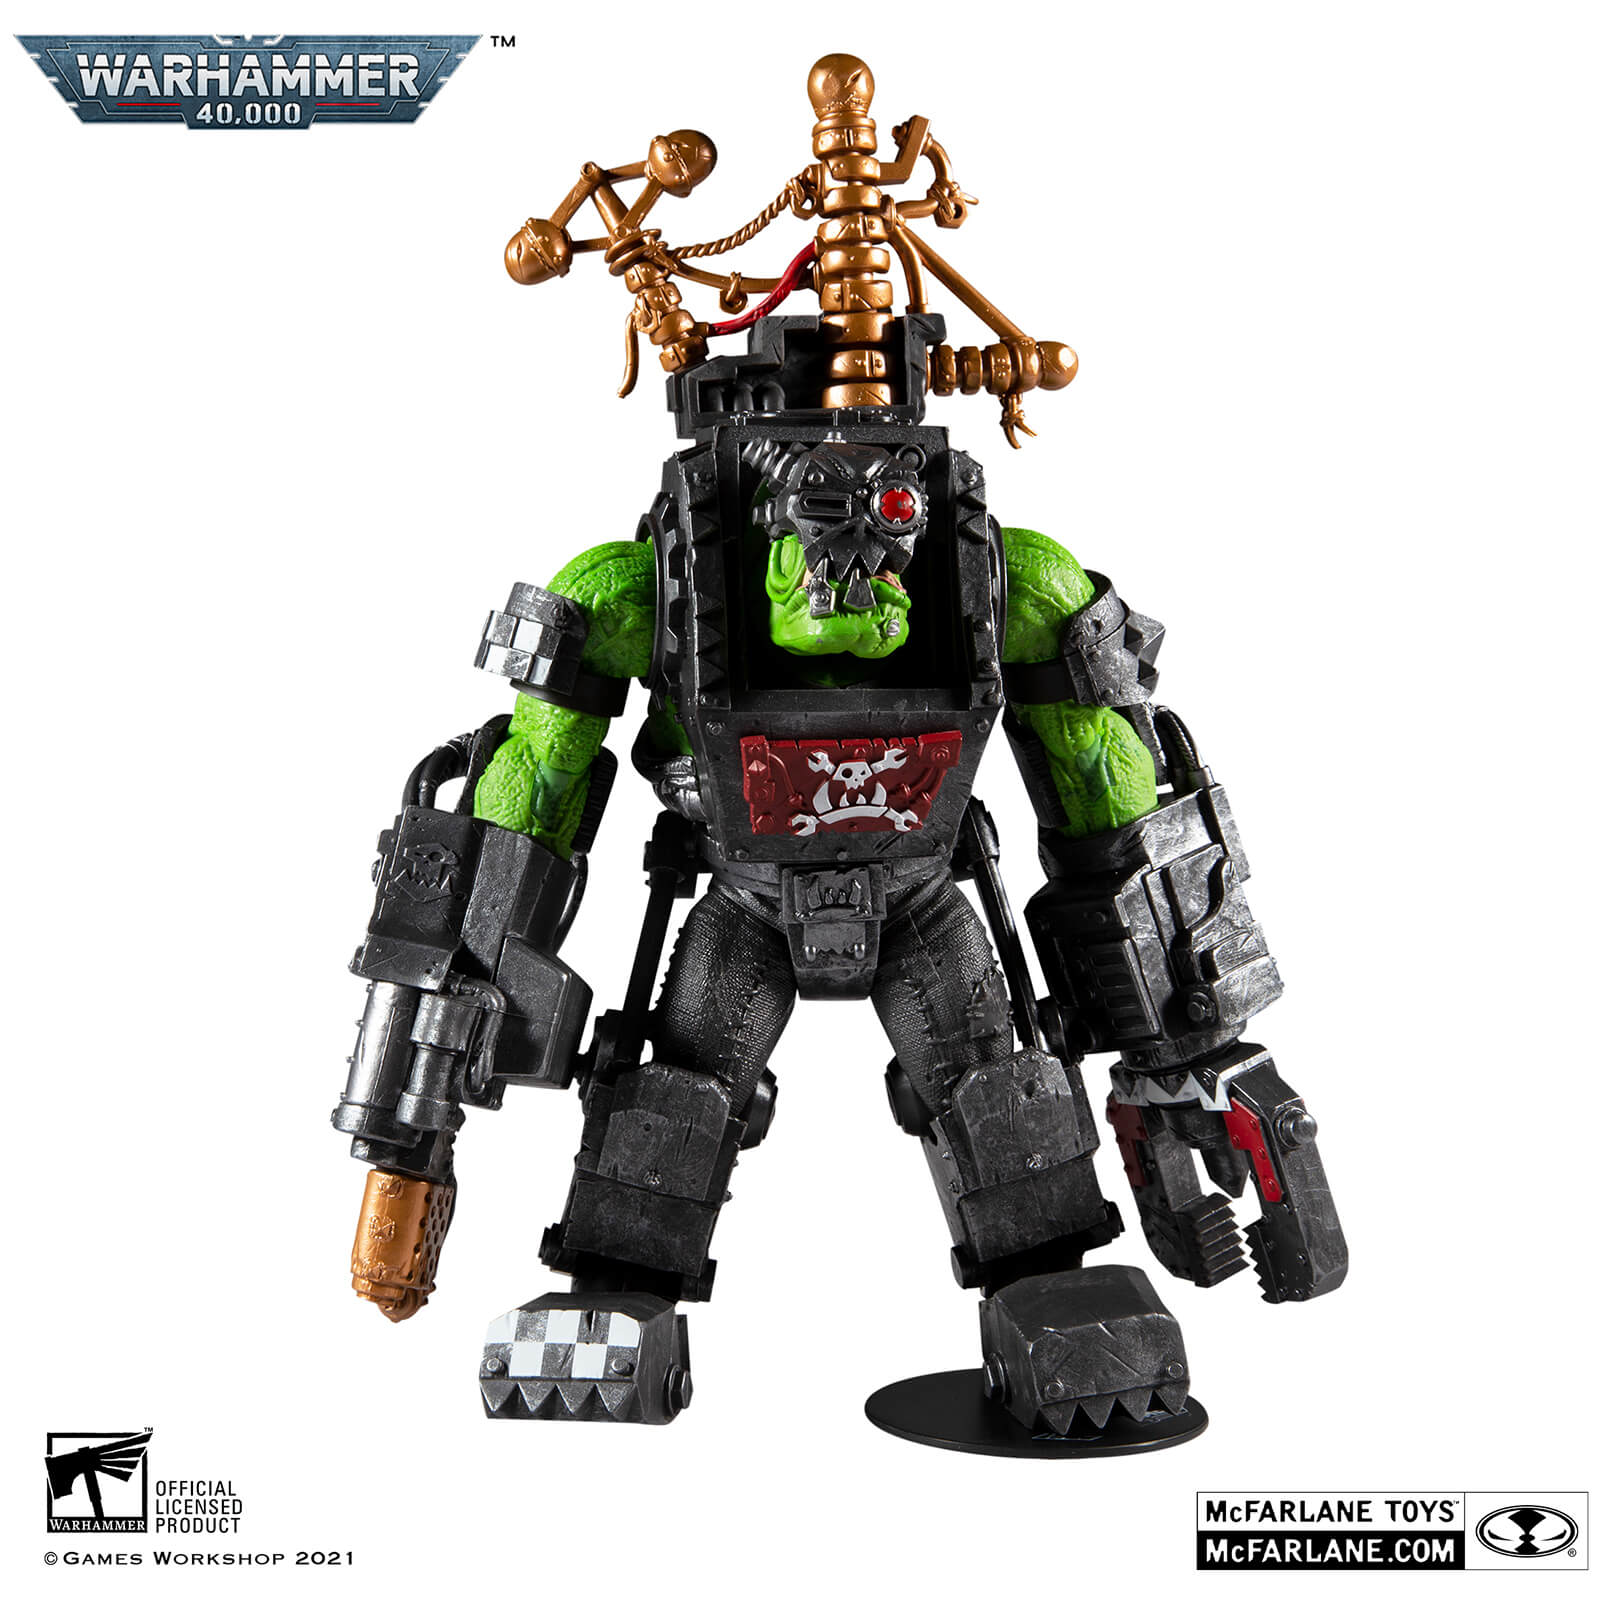 McFarlane Warhammer 40,000 Megafig Action Figure - Ork Big Mek